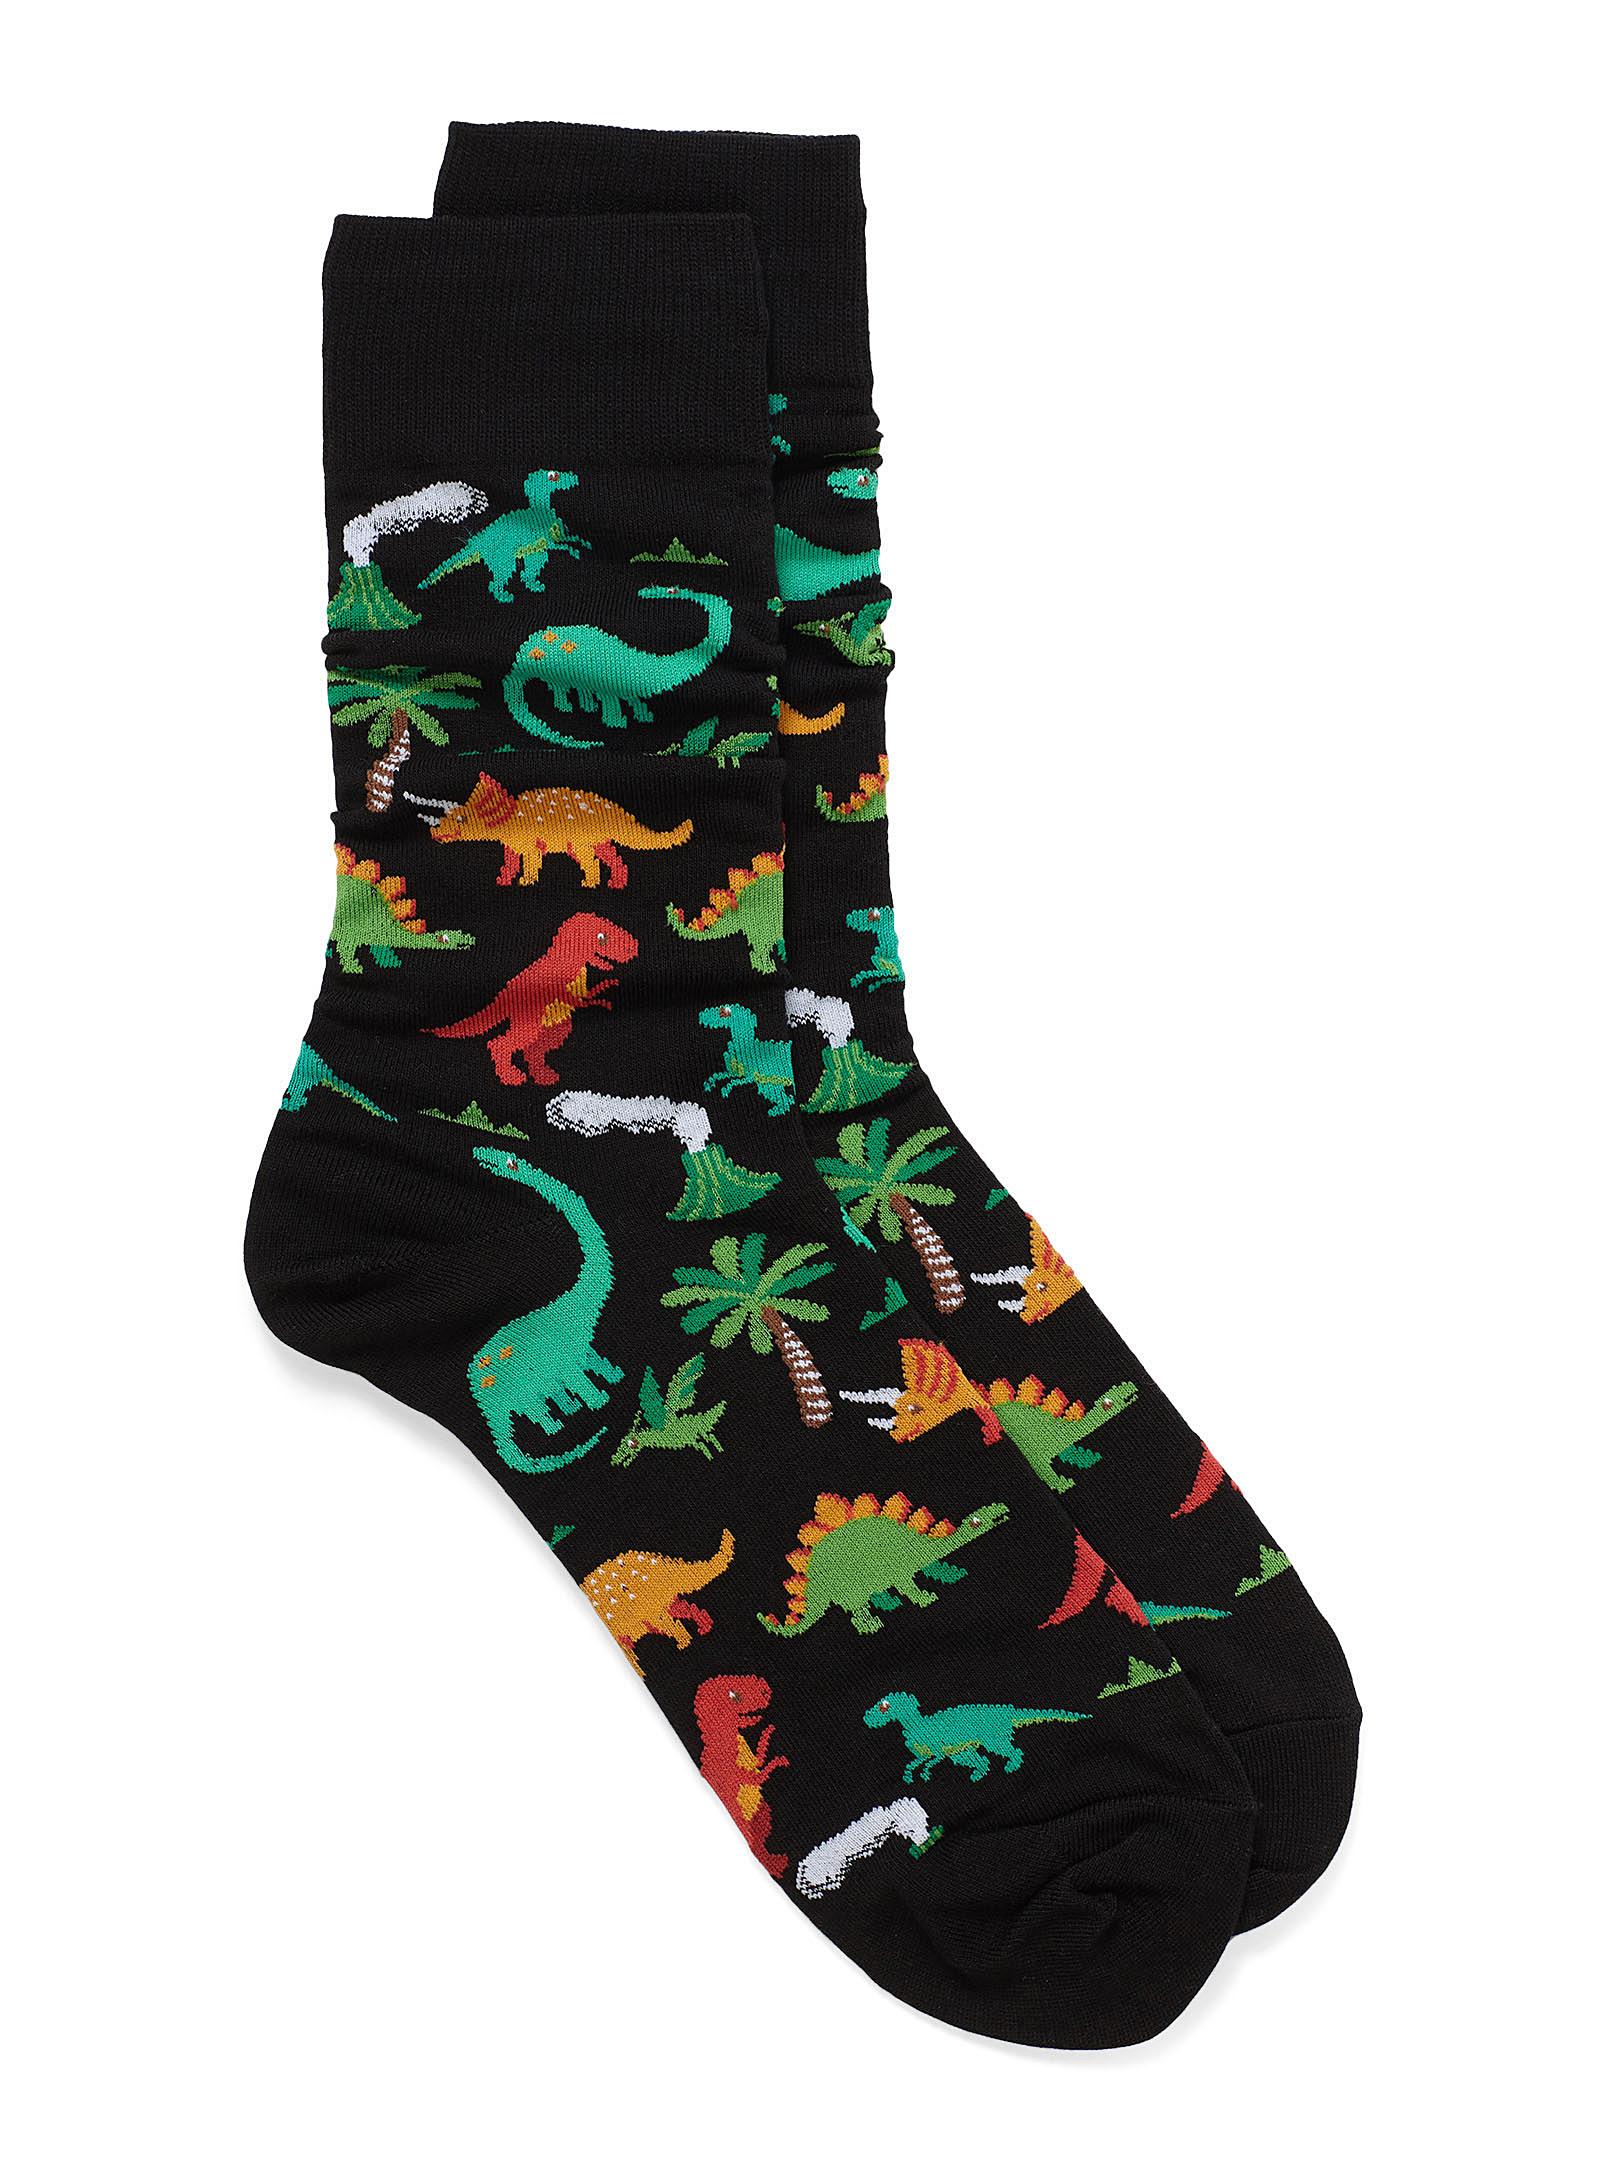 Hot Sox - Men's Dinosaurs socks